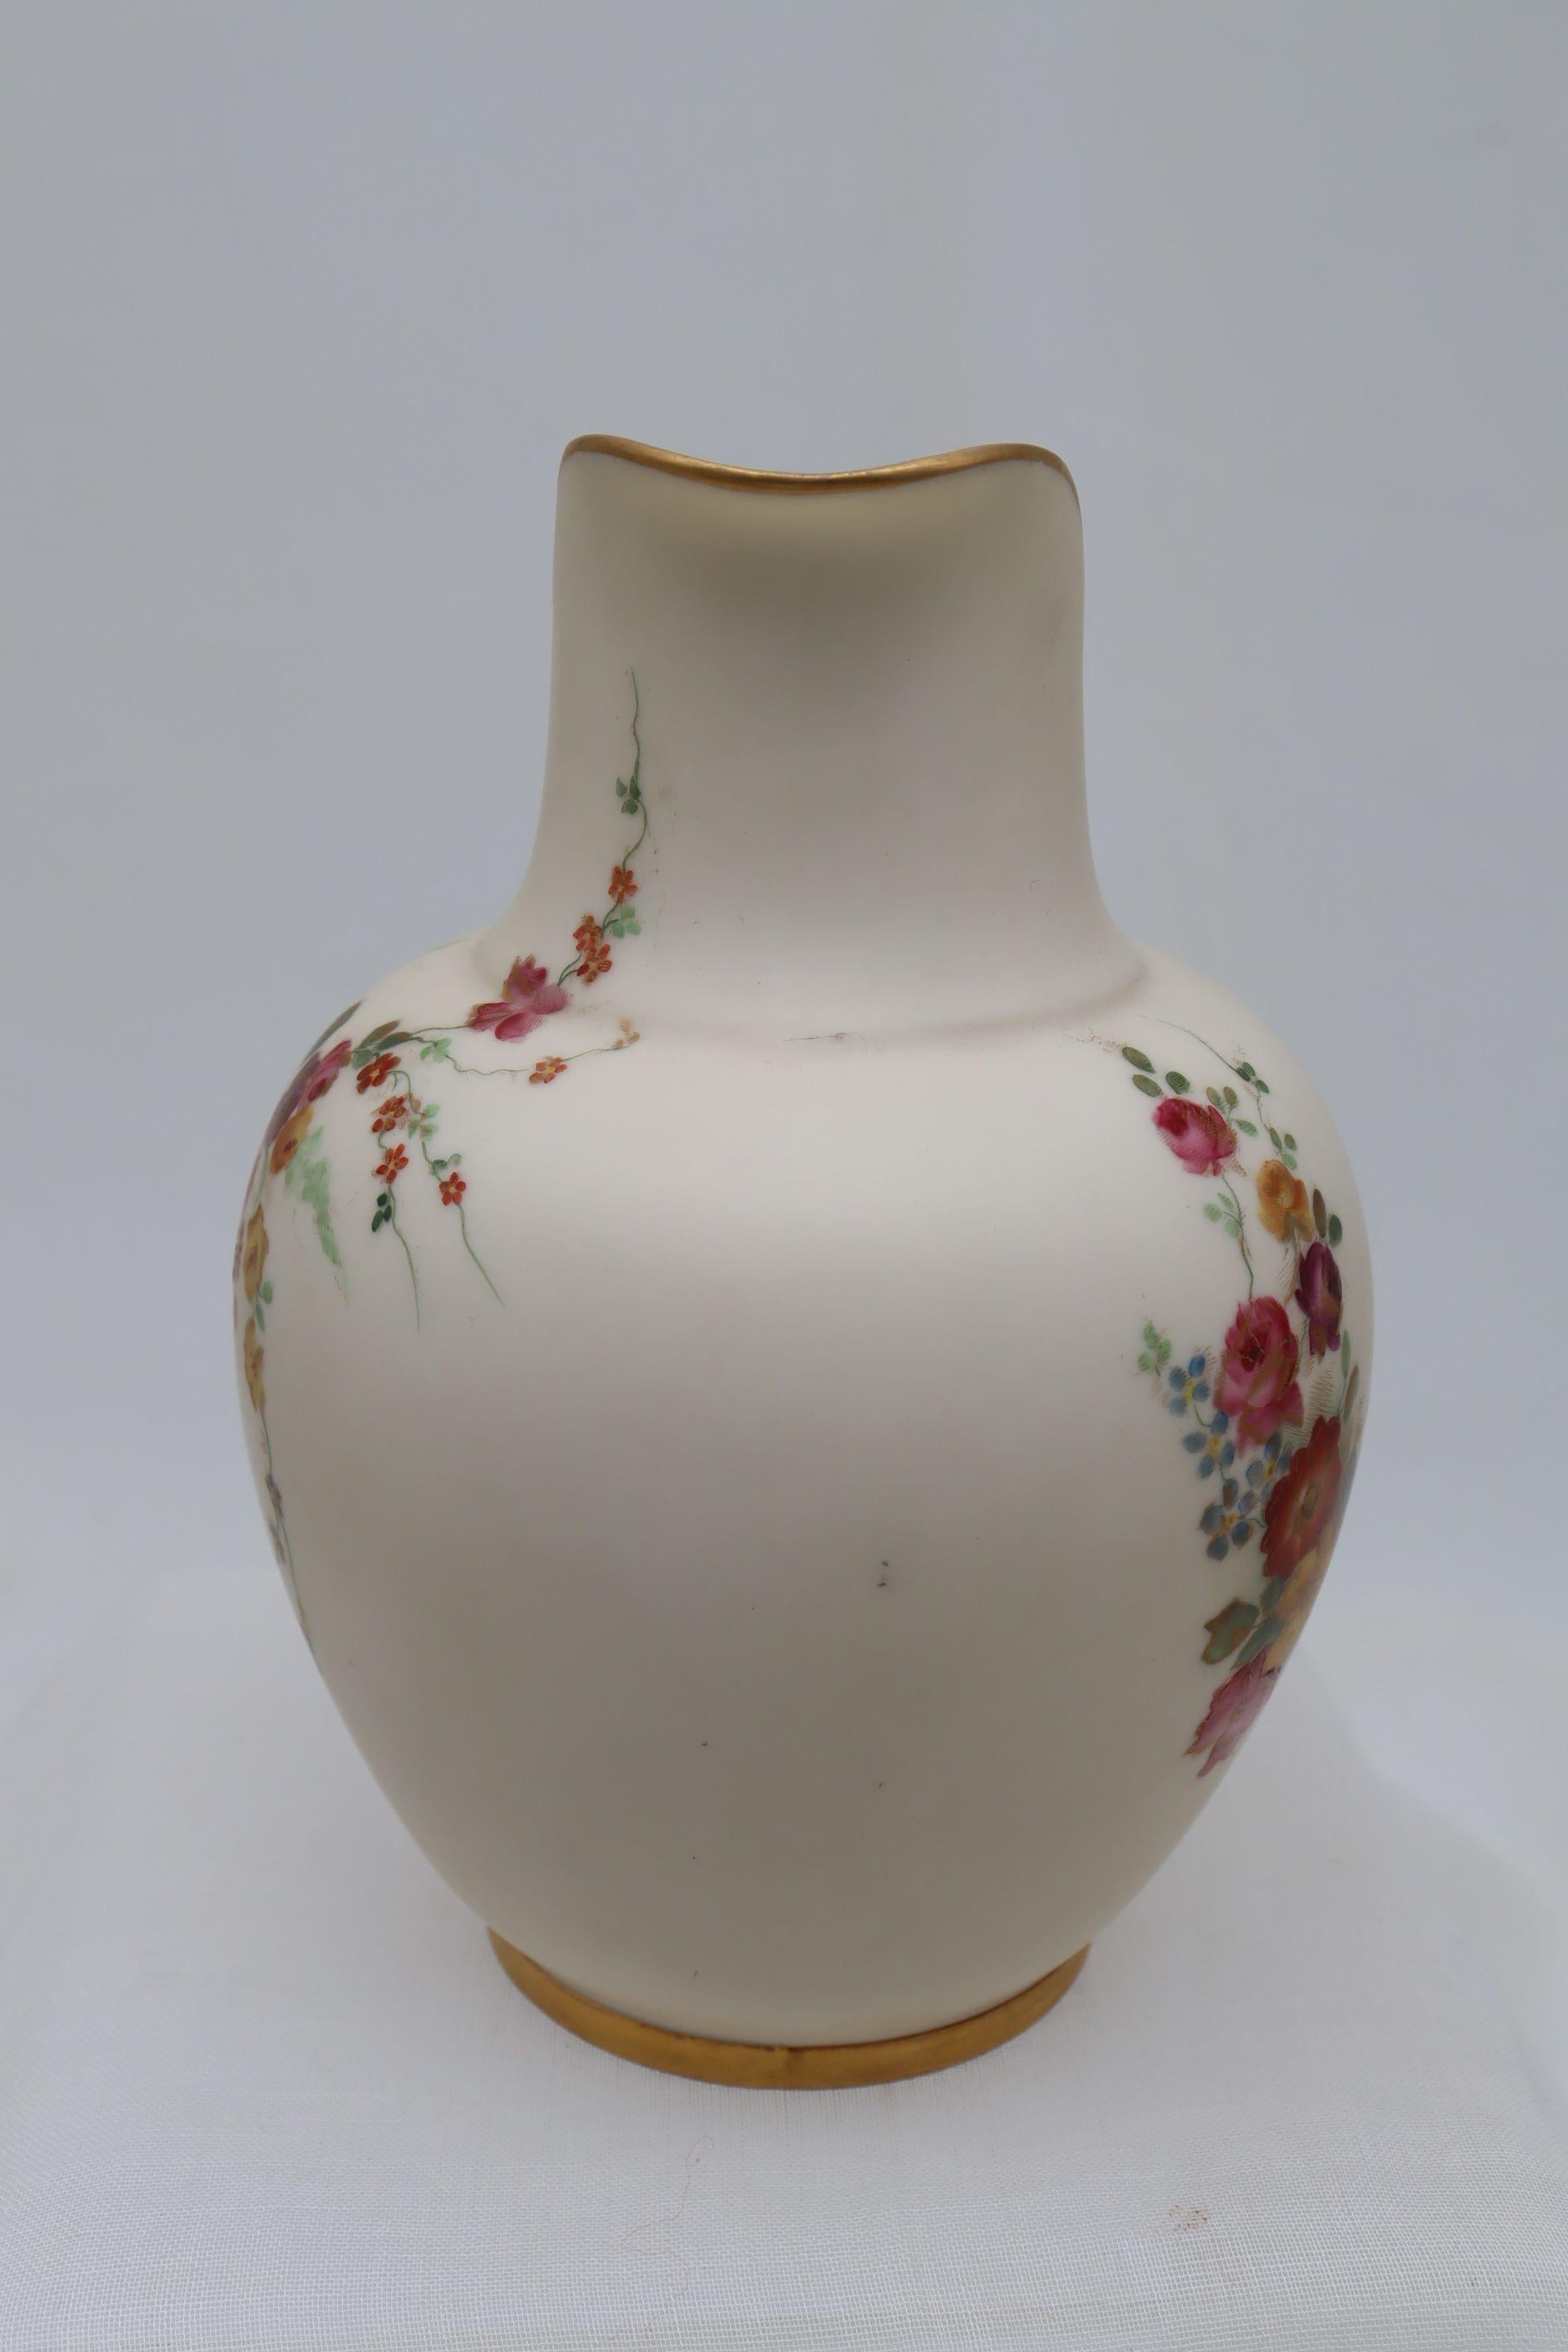 Diese Porzellankanne von Royal Worcester ist mit einer lebendigen, handkolorierten Blumenpracht auf cremefarbenem Grund verziert, die mit Vergoldung verziert ist. Auf der Rückseite befindet sich ein kleineres Spray. Die Kannenform ist als Nummer